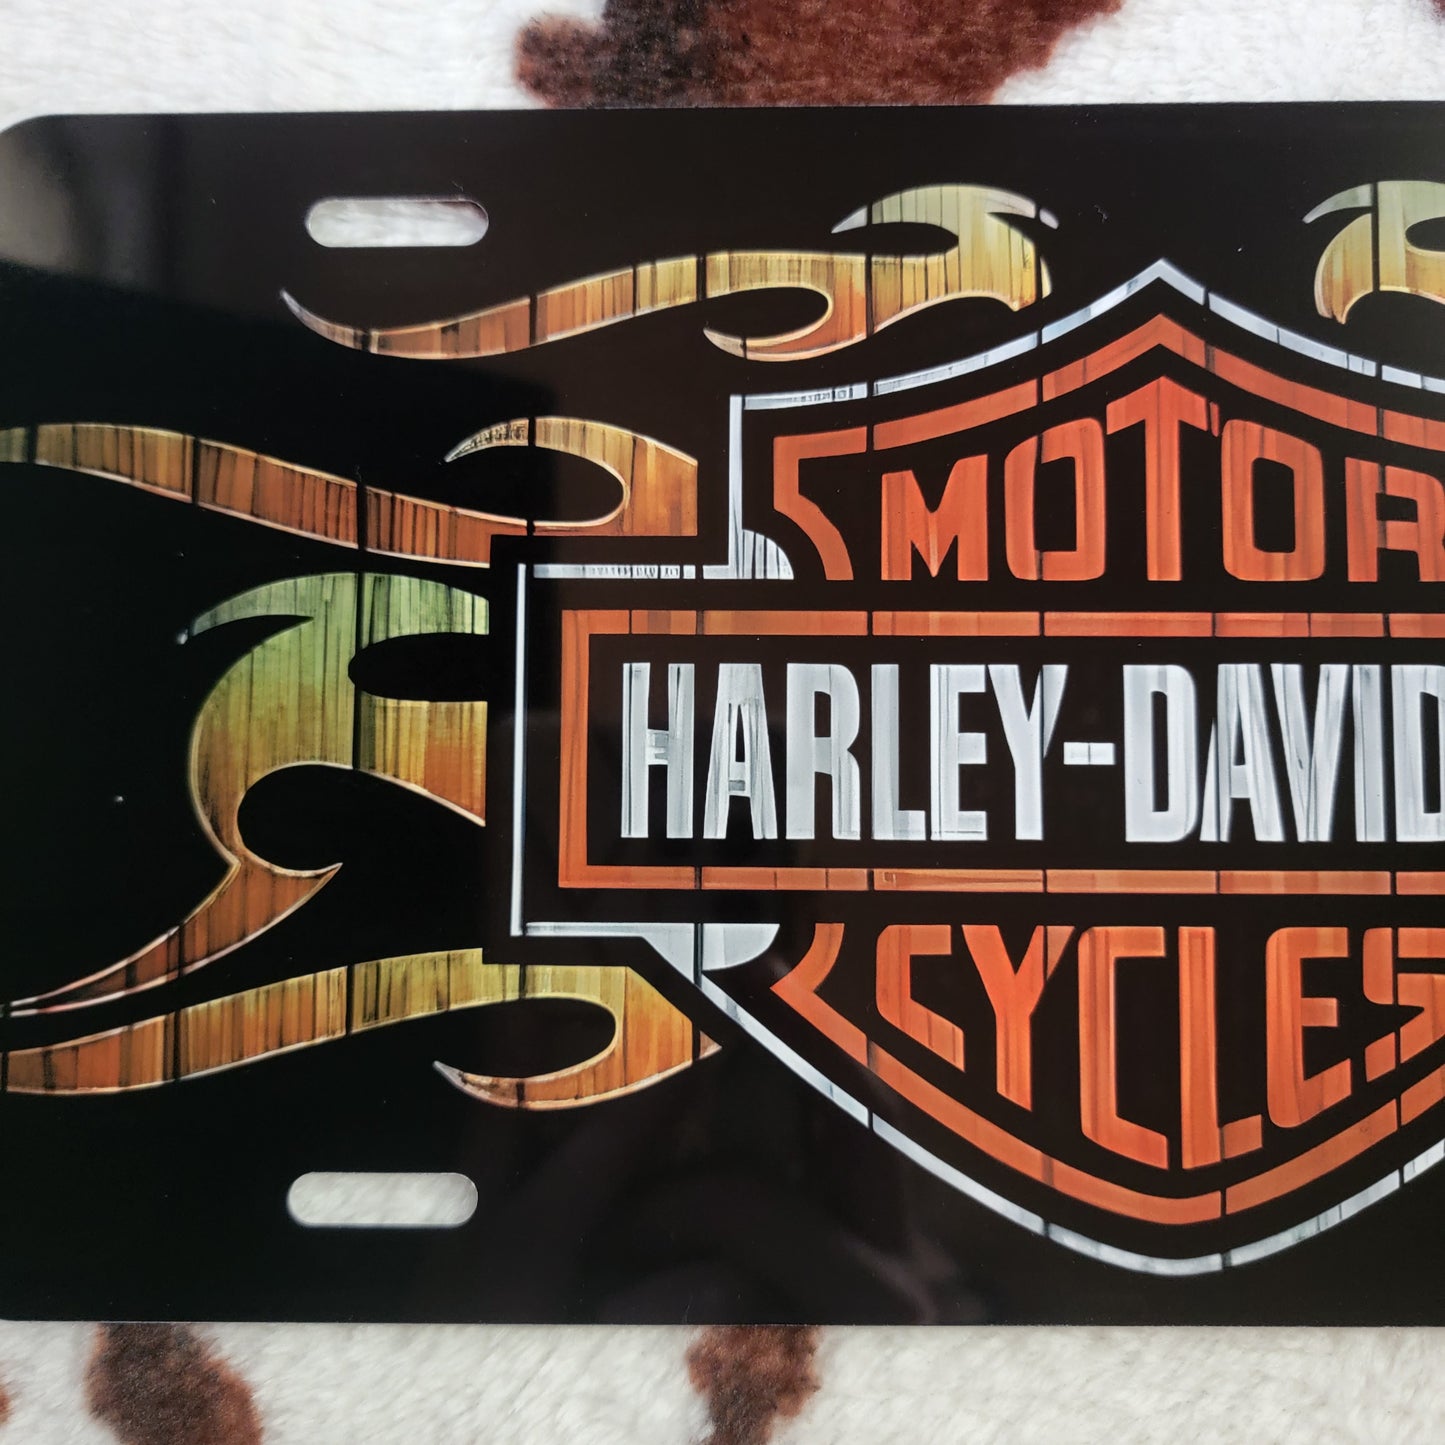 Harley Davidson Custom Car Tag License Plate